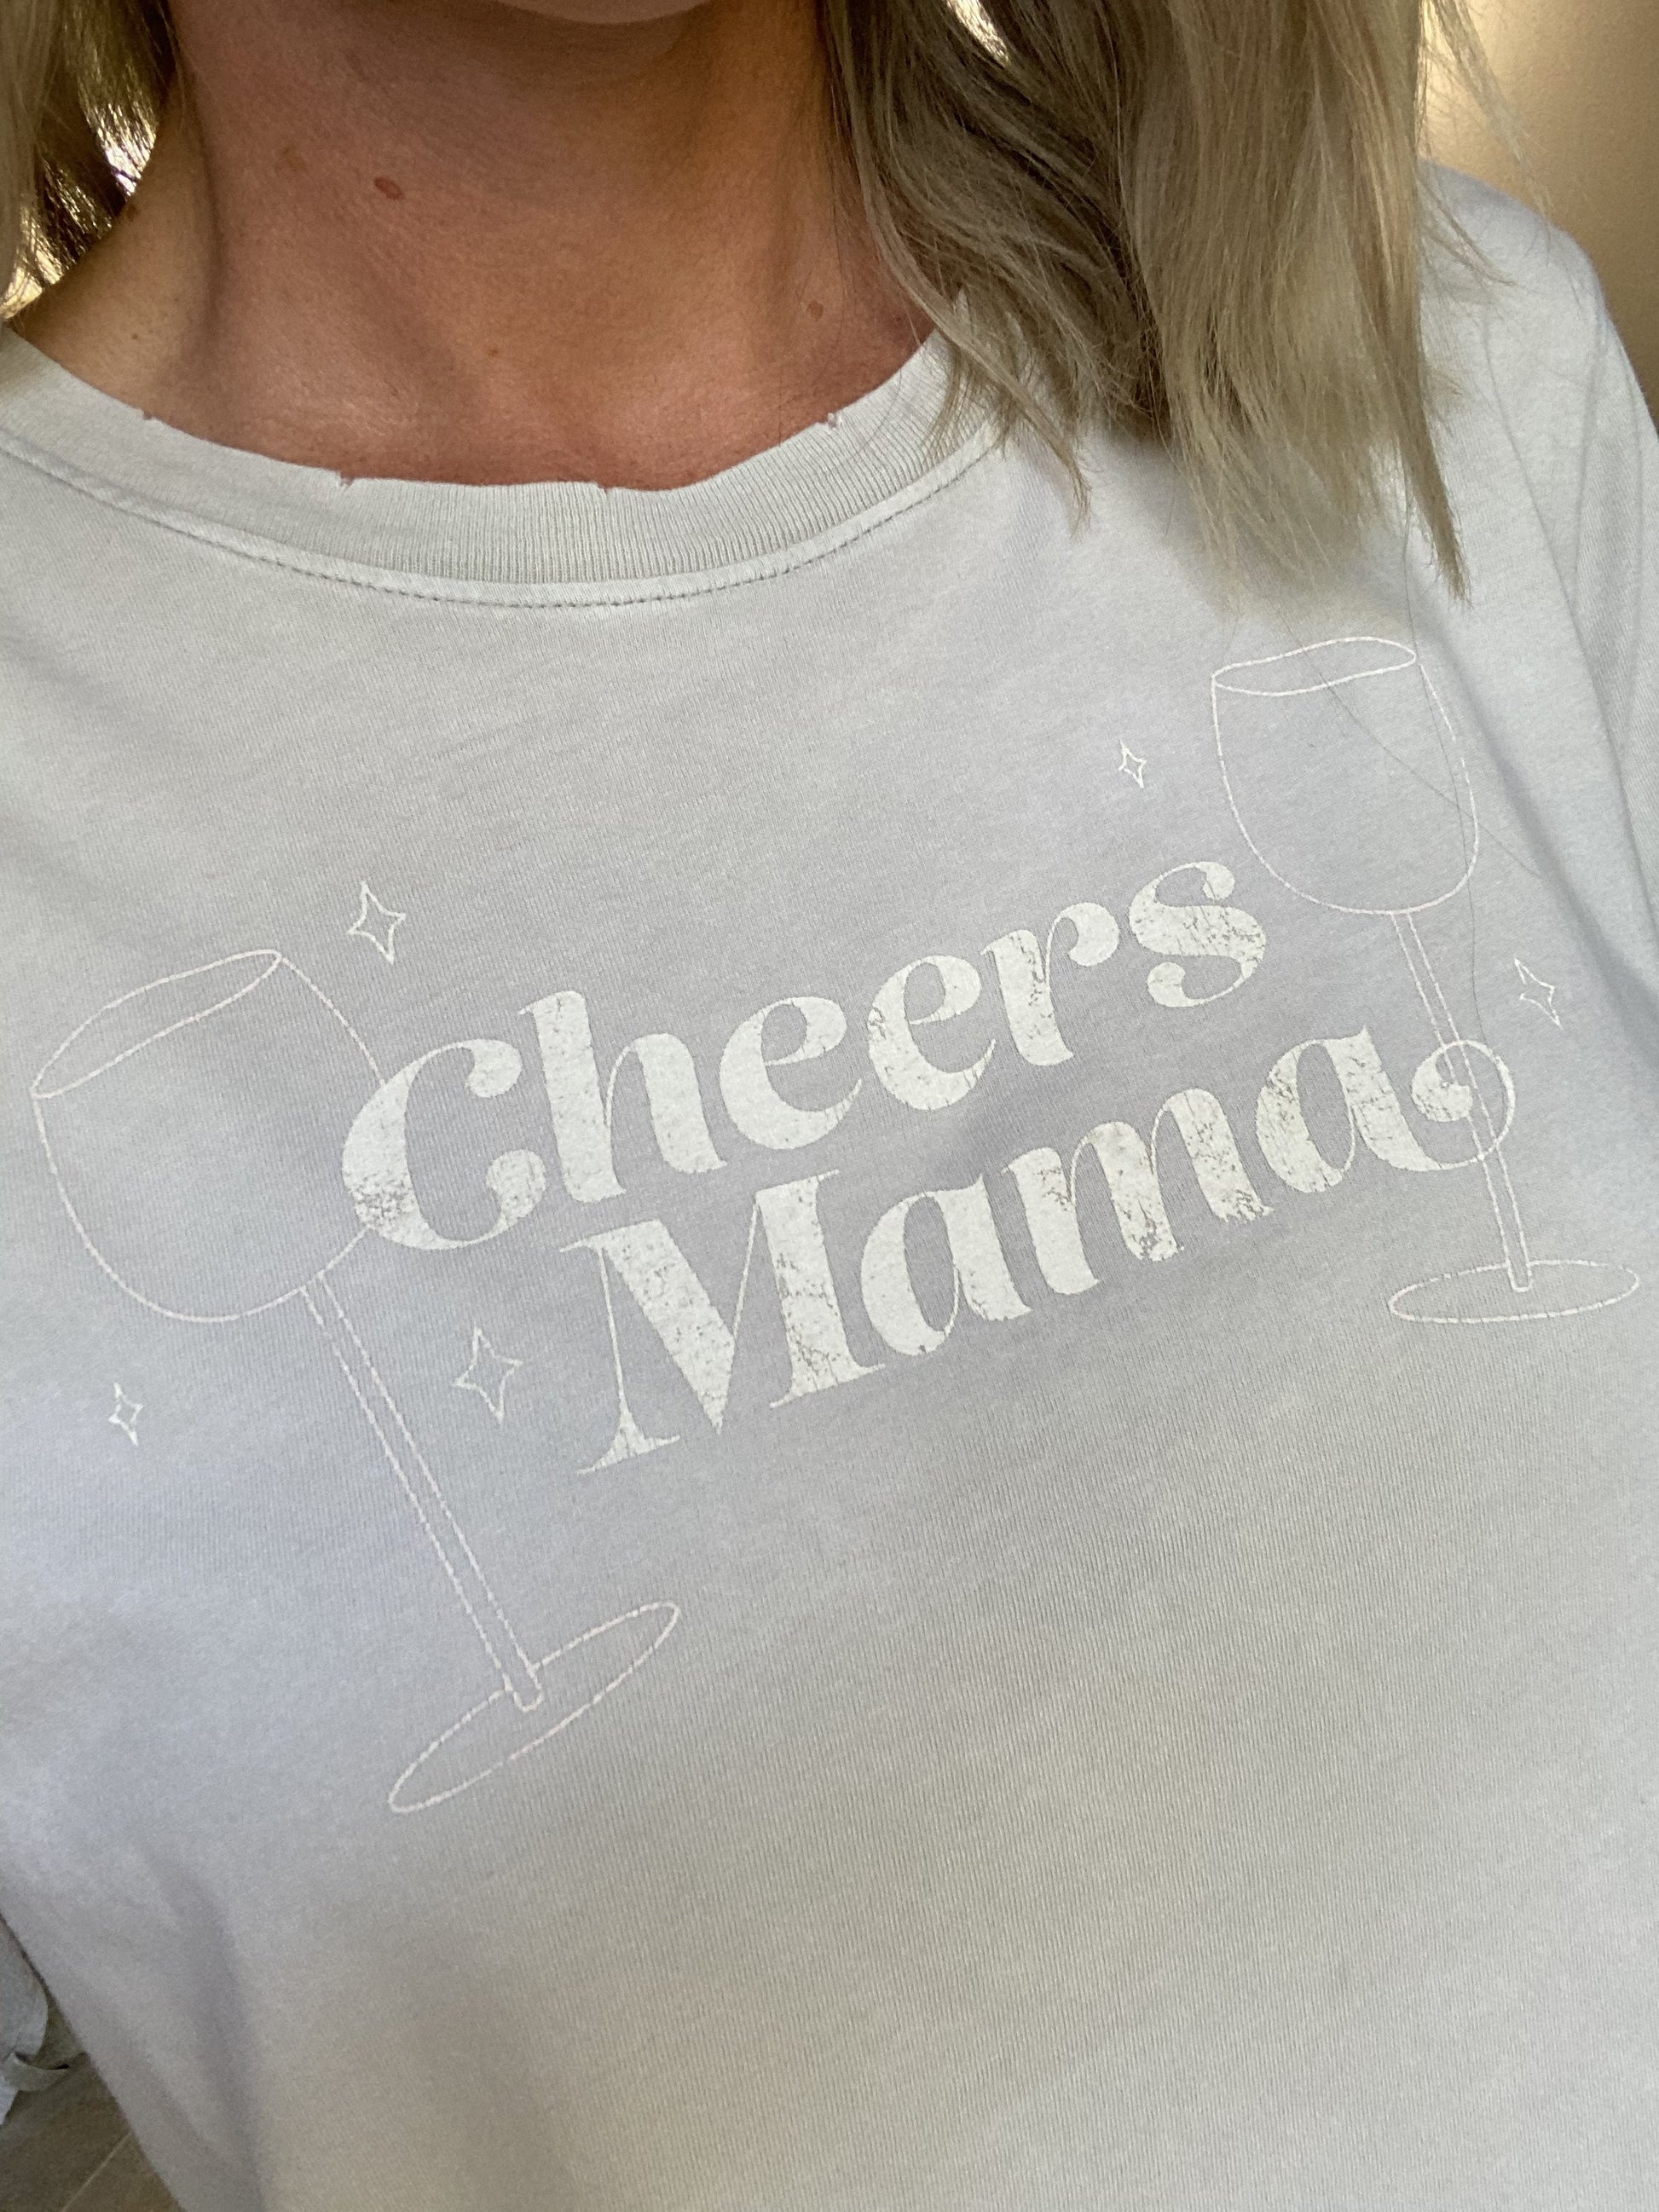 Cheers Mama Tee - Sugar Mama Shimmer